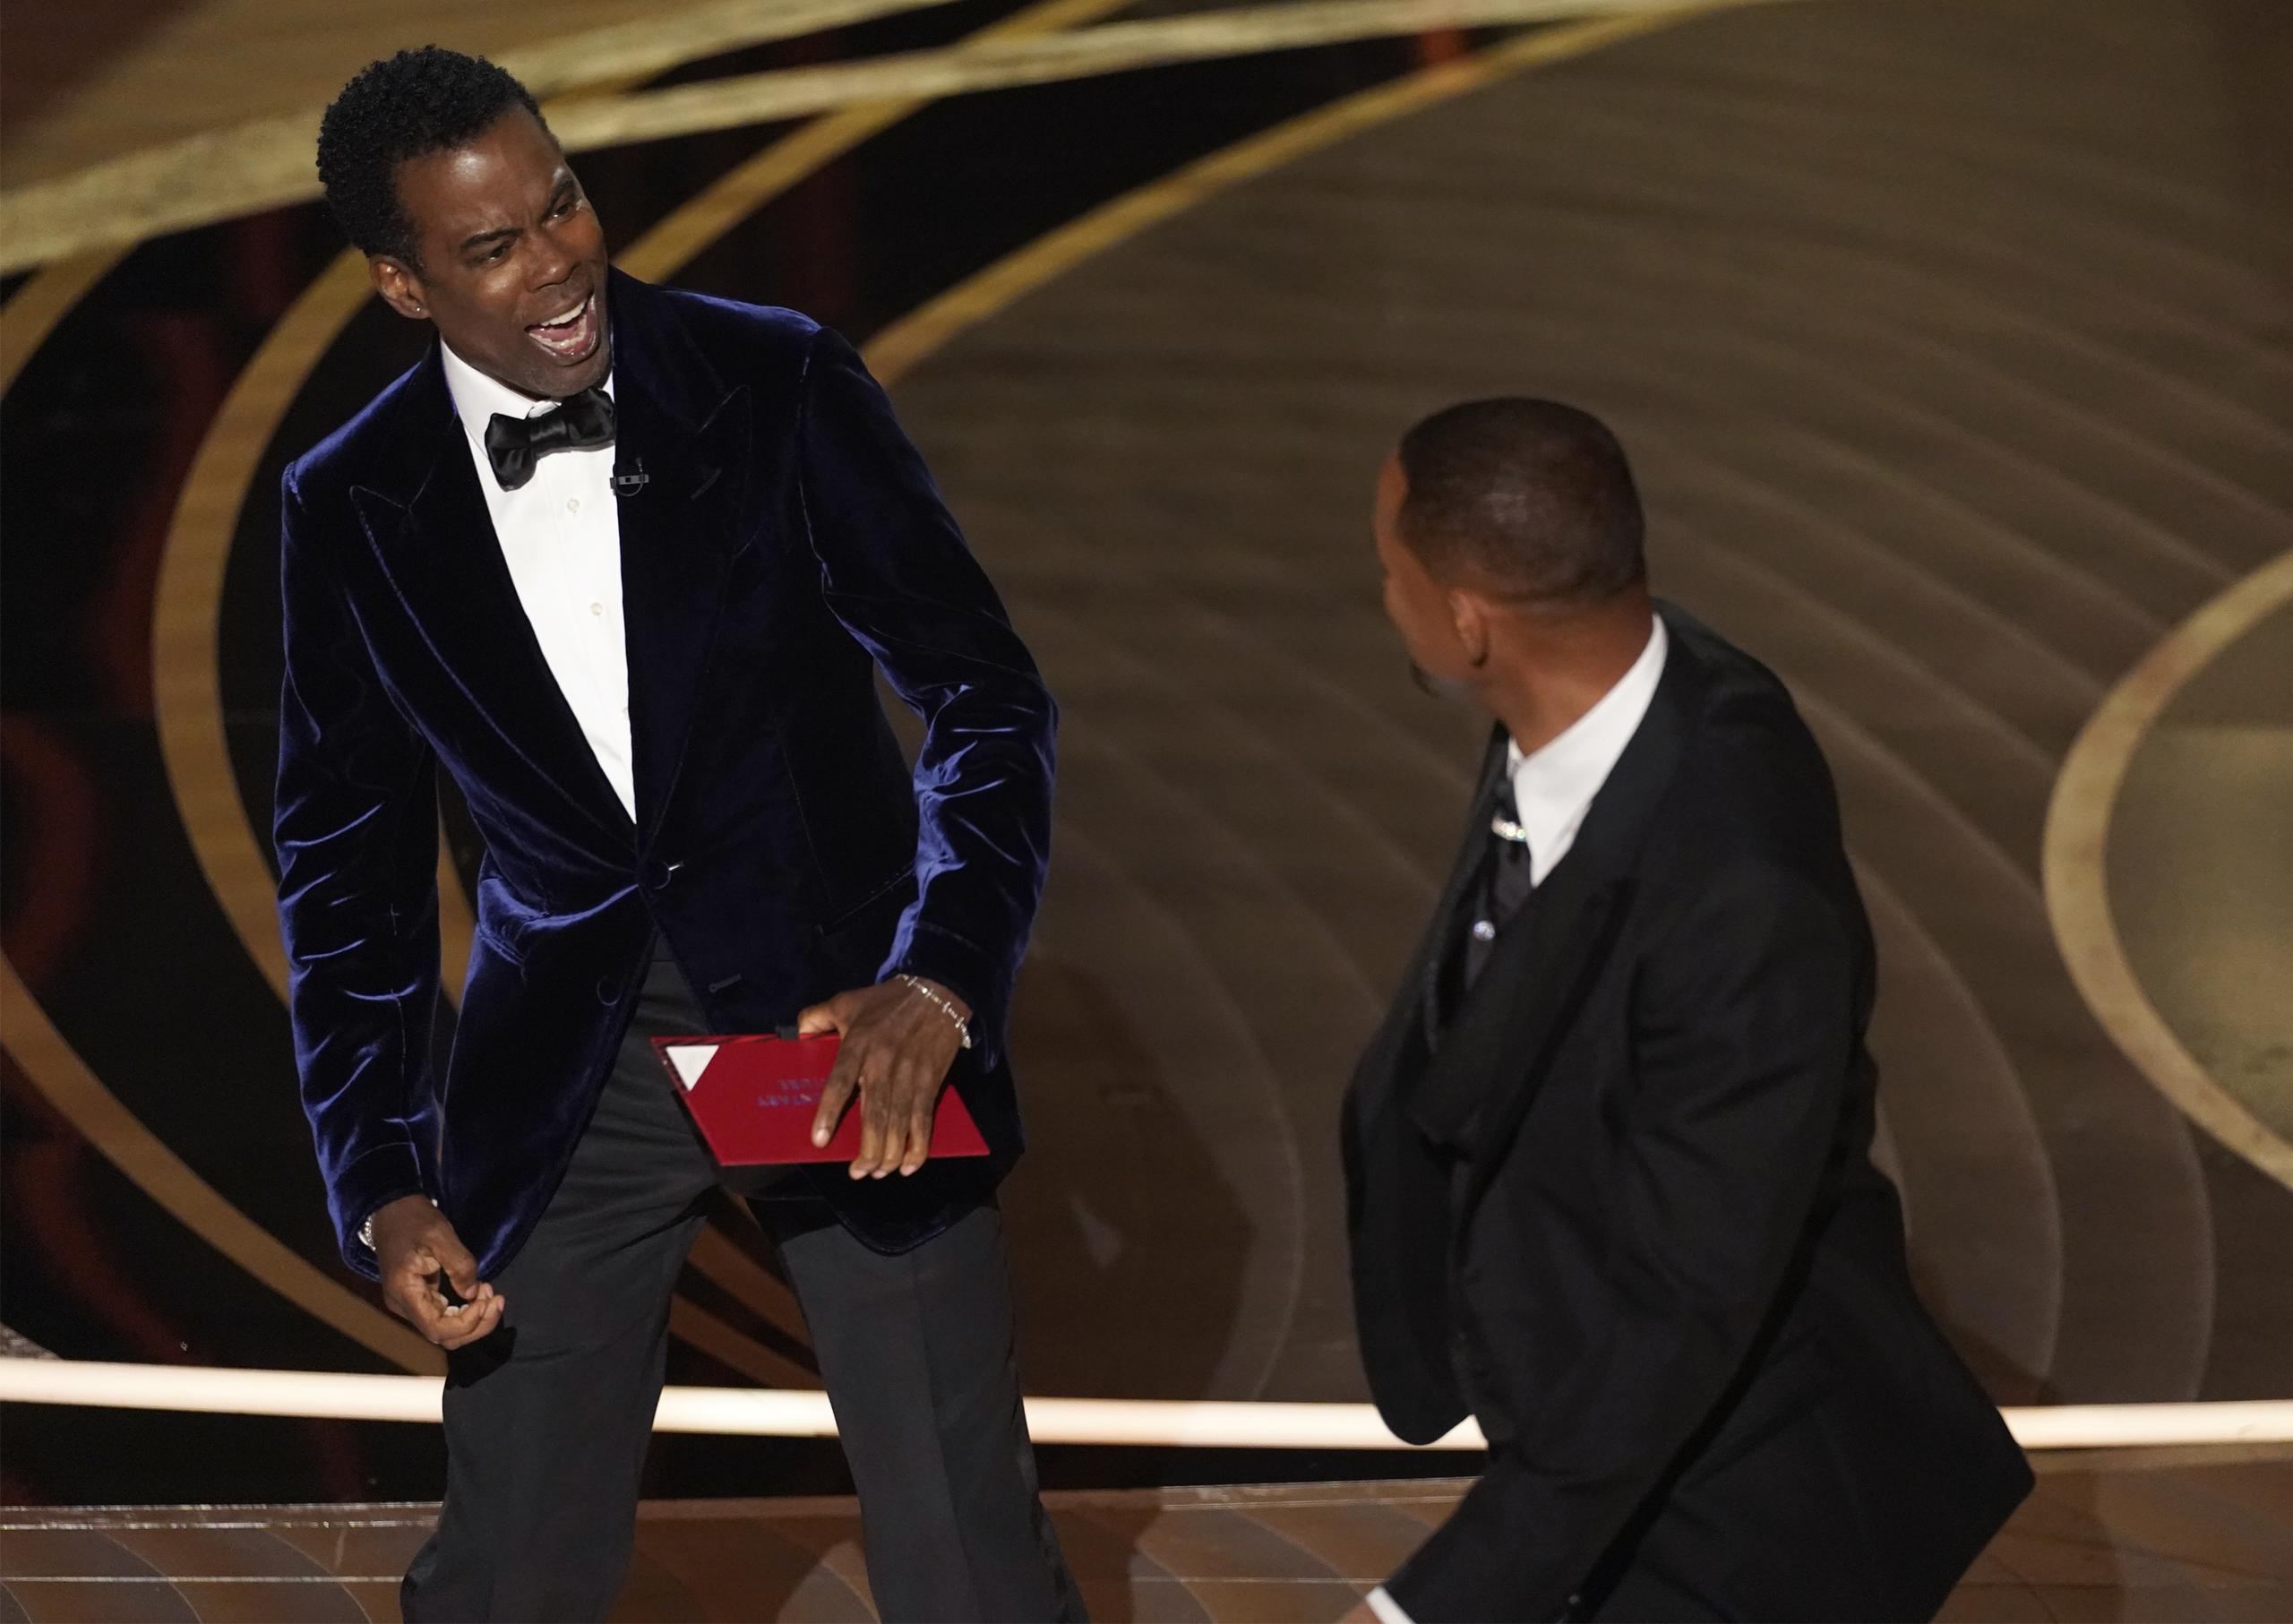 Chris Rock reaccionó sorprendido luego de recibir una bofetada de parte del actor Will Smith durante la ceremonia de los premios Oscar.